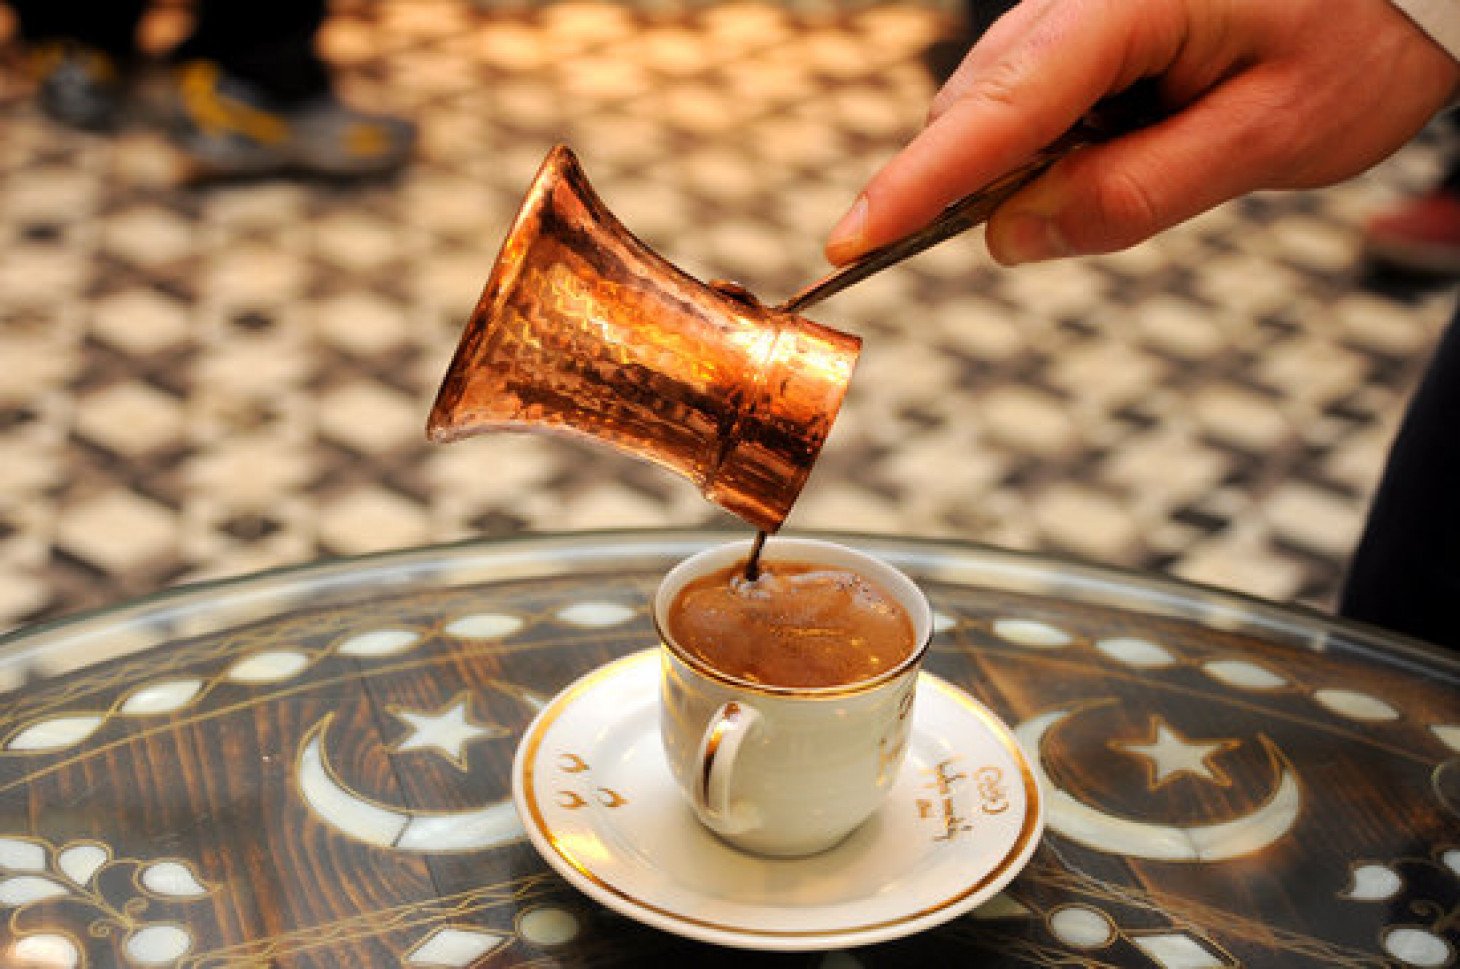 В турции подают кофе с водой. Турецкий кофе Хафиз Мустафа. Хафиз Мустафа 1864 Сиркеджи Стамбул. Турецкая джезва для кофе. Турецкий кофе Стамбул.